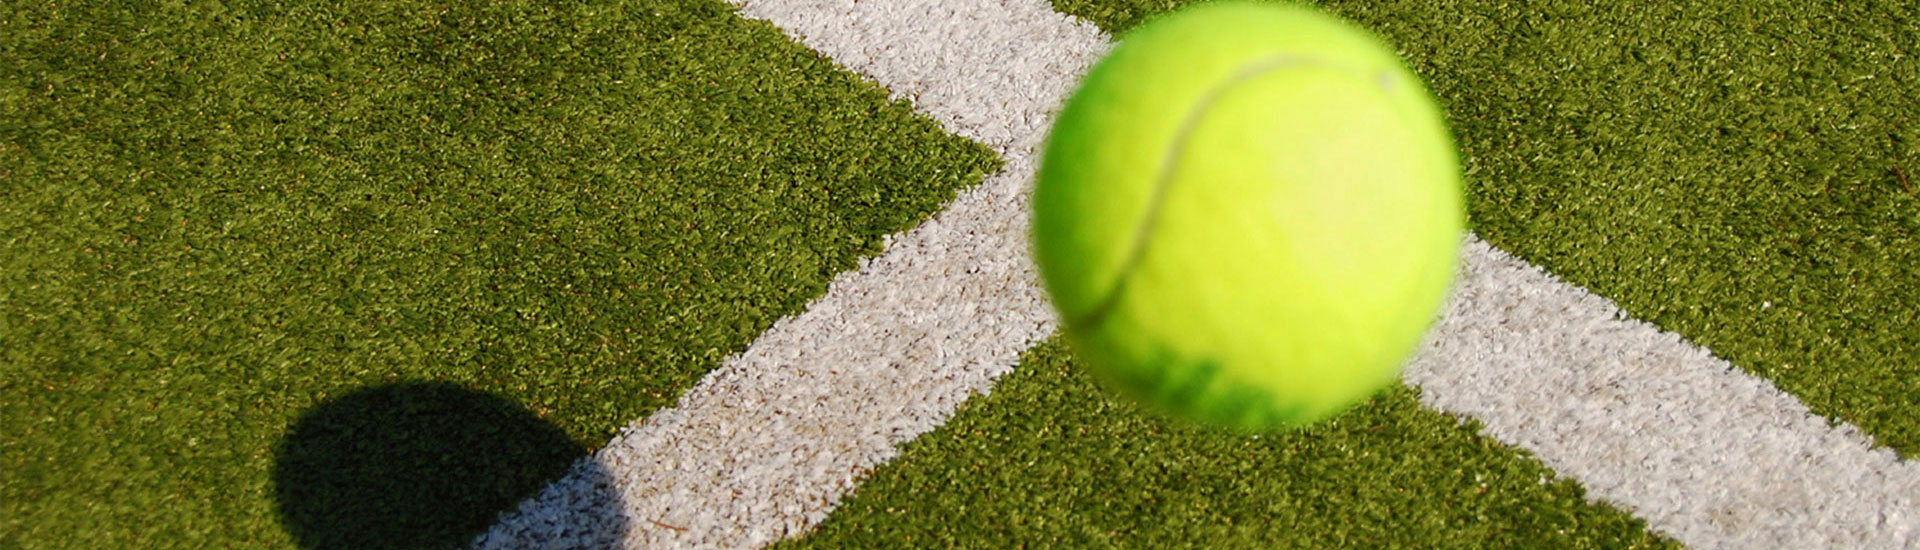 Artificial Grass for Tennis, Tennis Turf